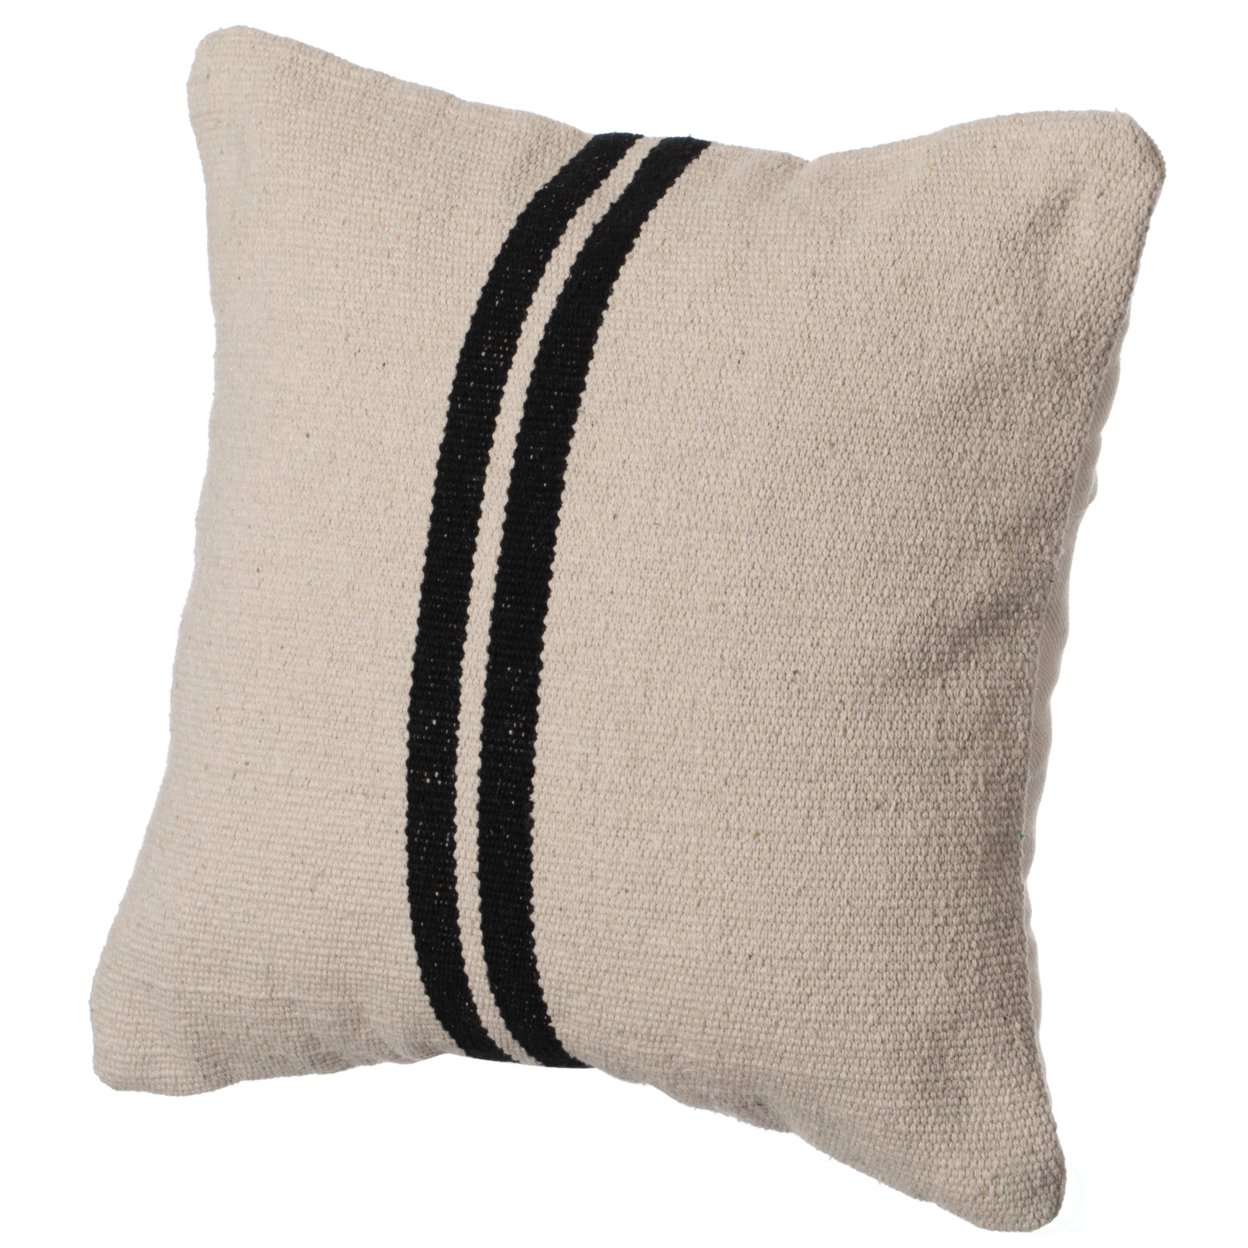 16 Handwoven Cotton Throw Pillow Cover Flat Natural Design - Seams